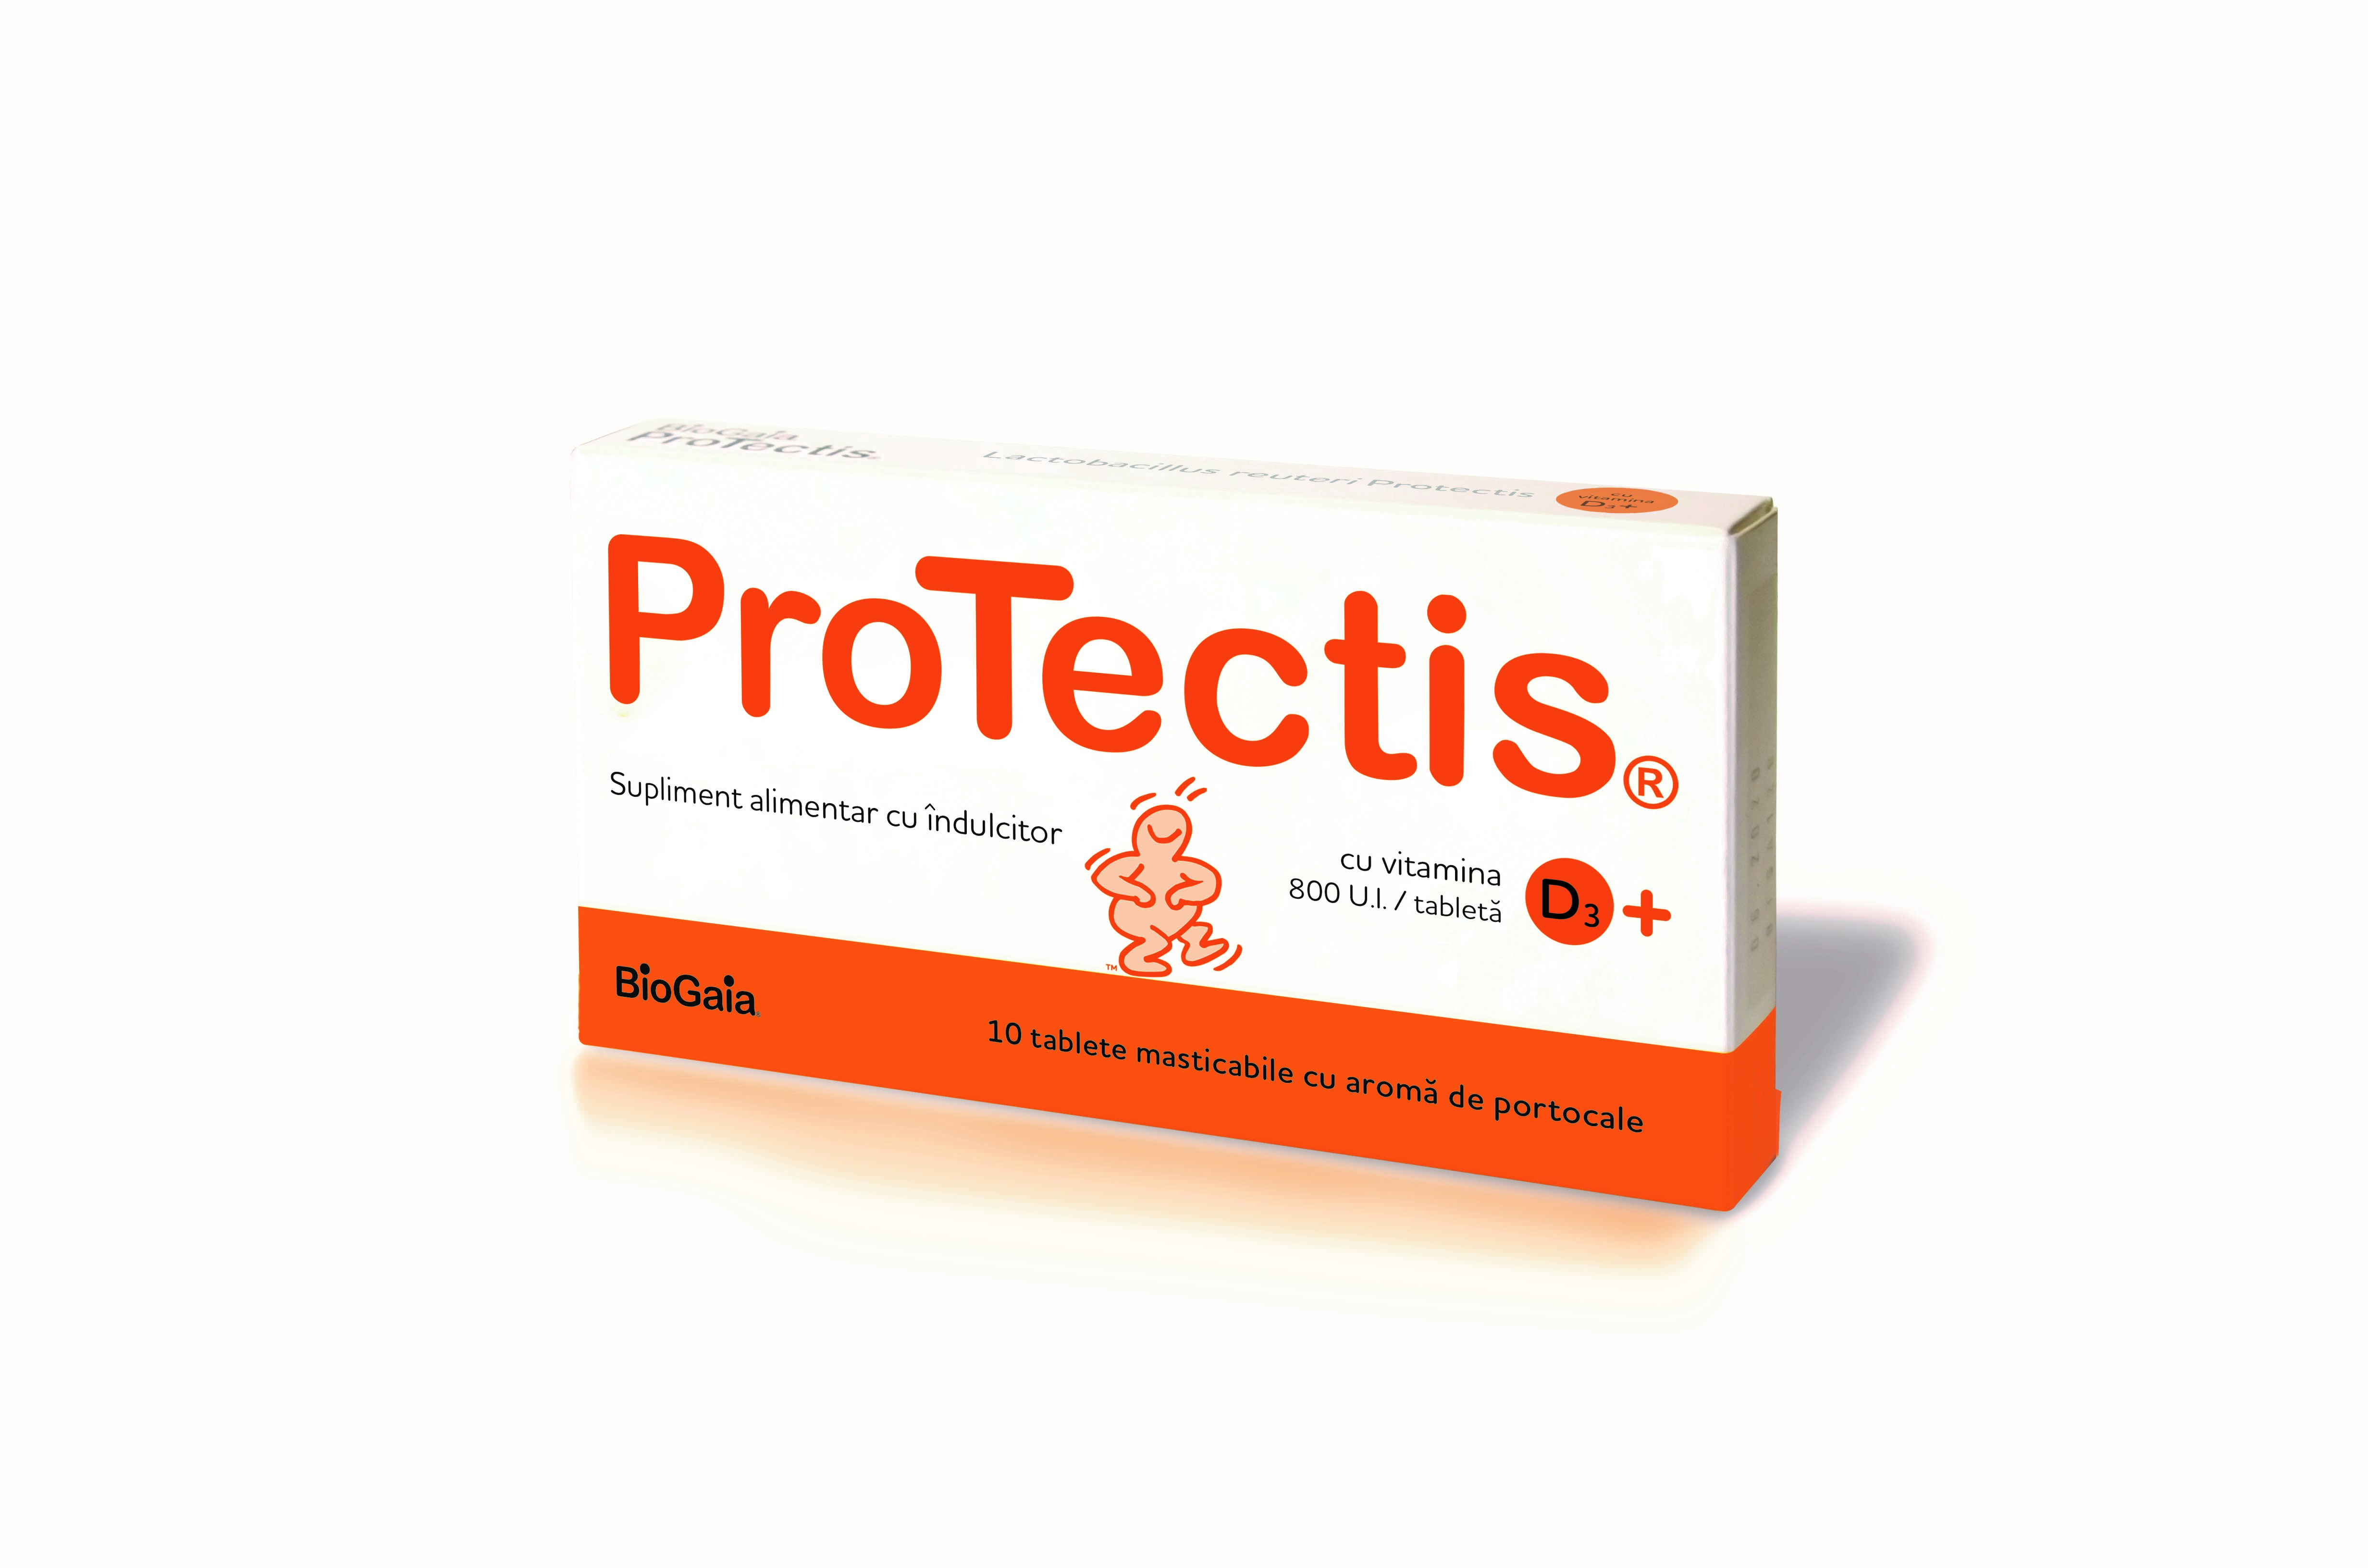 Probiotice si Prebiotice - Protectis BioGaia cu Vitamina D3 800UI aroma de portocale, 10 tablete masticabile, sinapis.ro